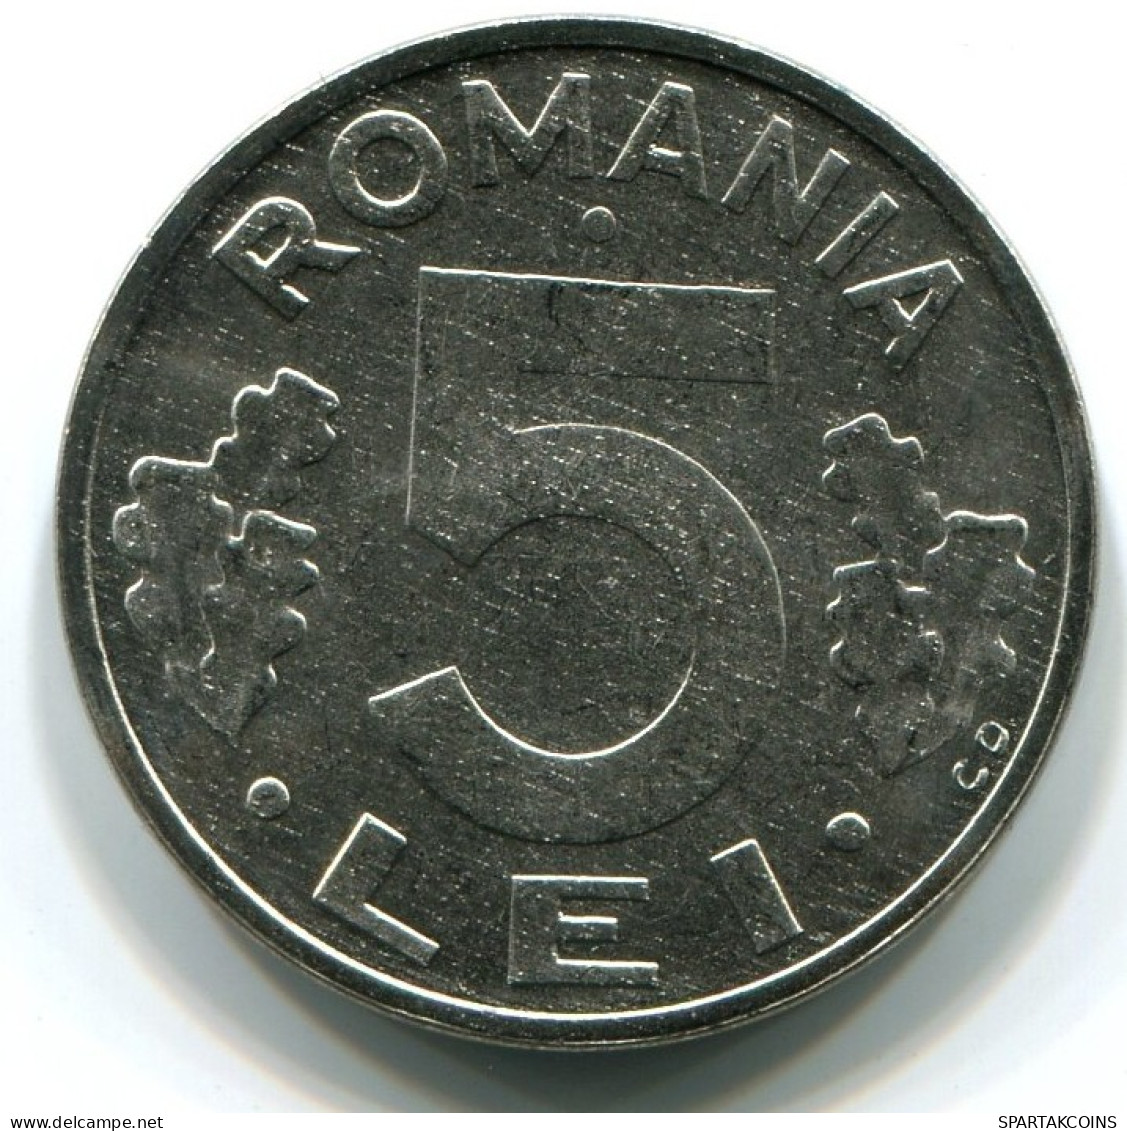 5 LEI 1992 ROMANIA UNC Eagle Coat Of Arms V.G Mark Coin #W11306.U.A - Romania